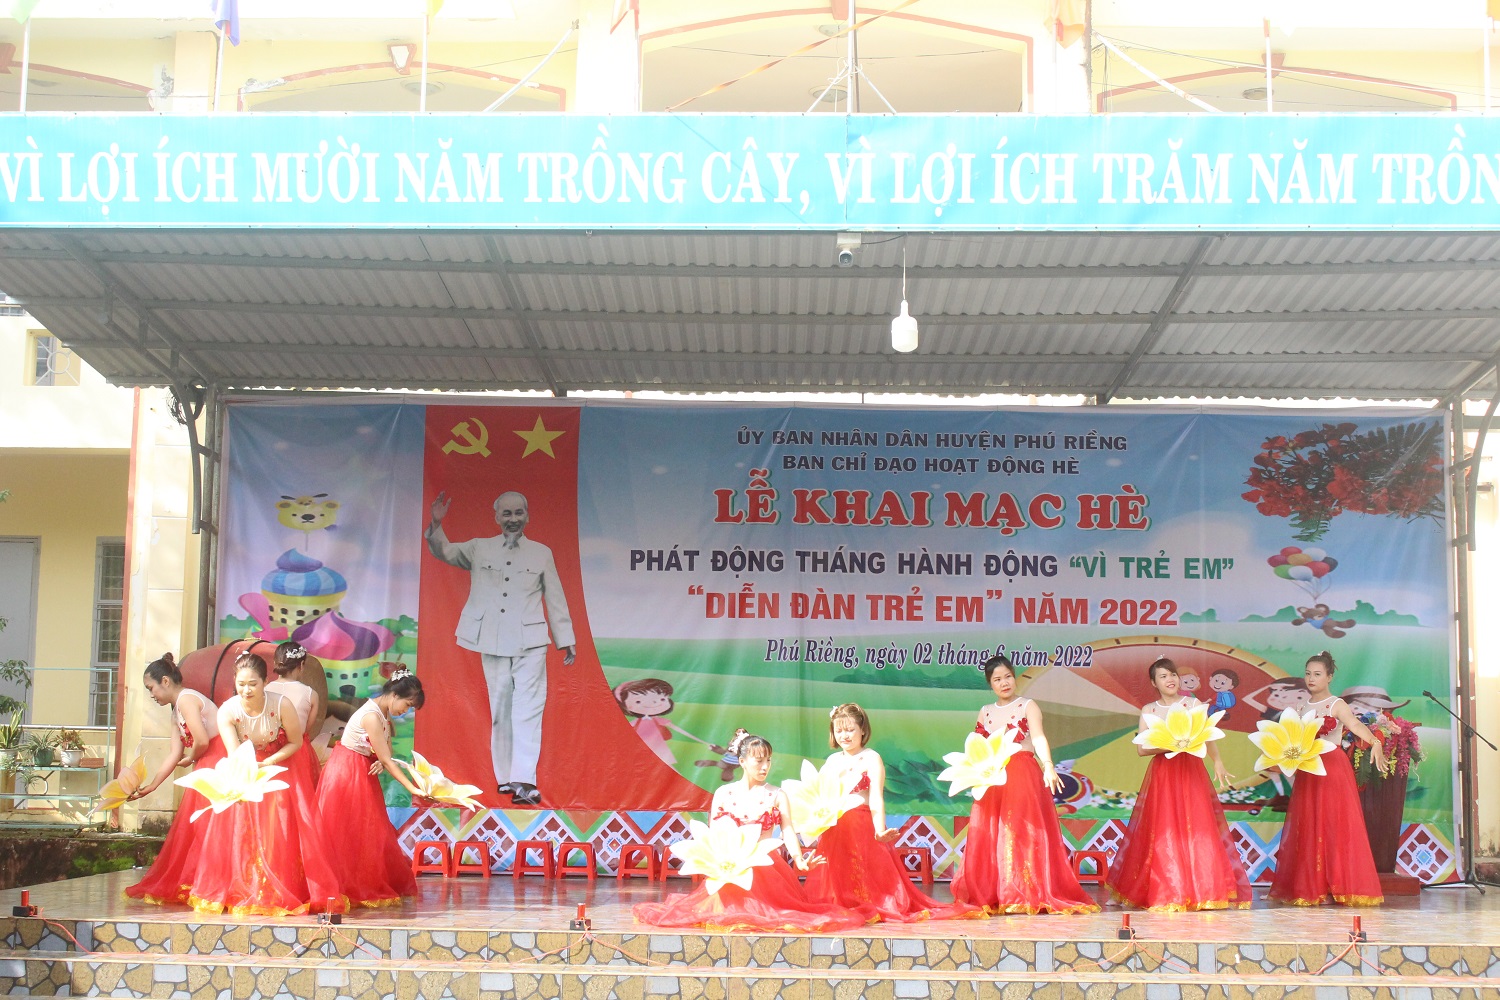 Huyện Phú Riềng: Sôi nổi Lễ Khai mạc hè, phát động tháng hành động “Vì trẻ em” năm 2022.